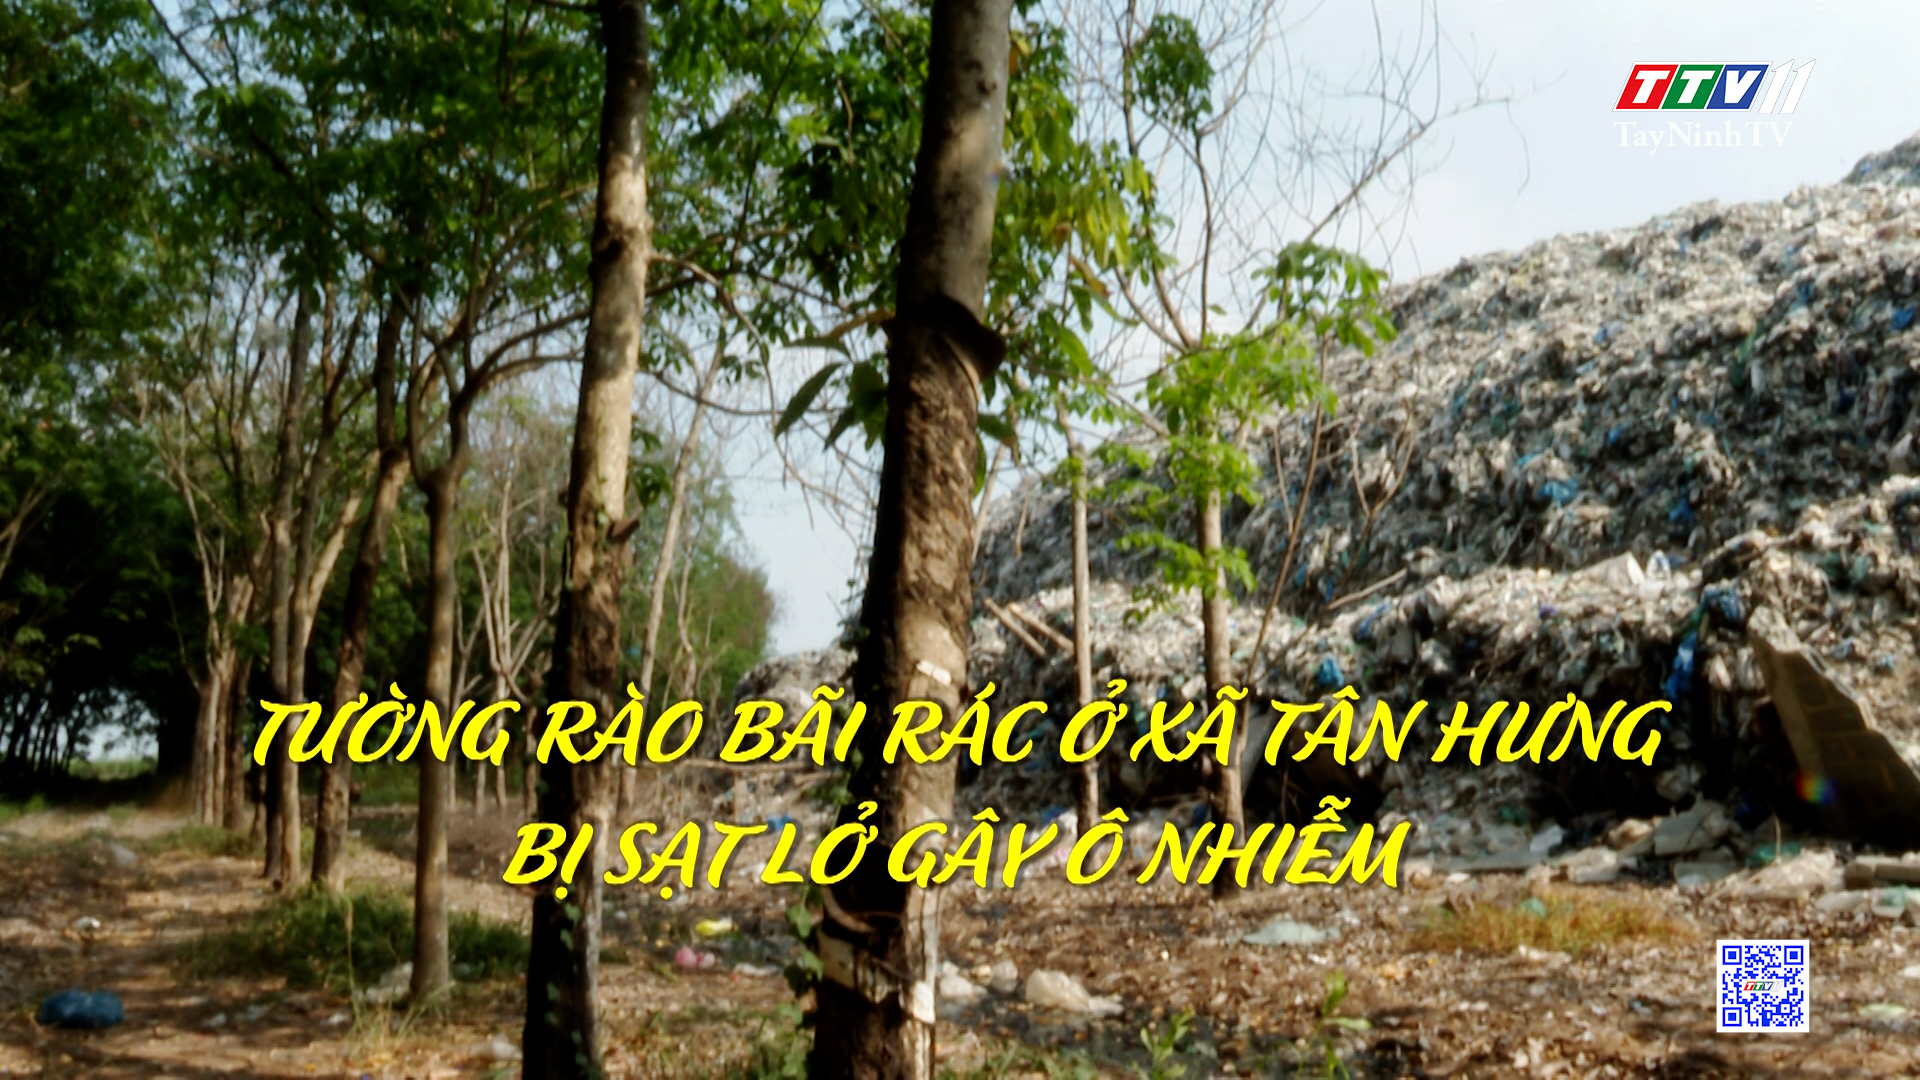 Tường rào bãi rác ở xã Tân Hưng bị sạt lở gây ô nhiễm | Hộp thư truyền hình | TayNinhTV